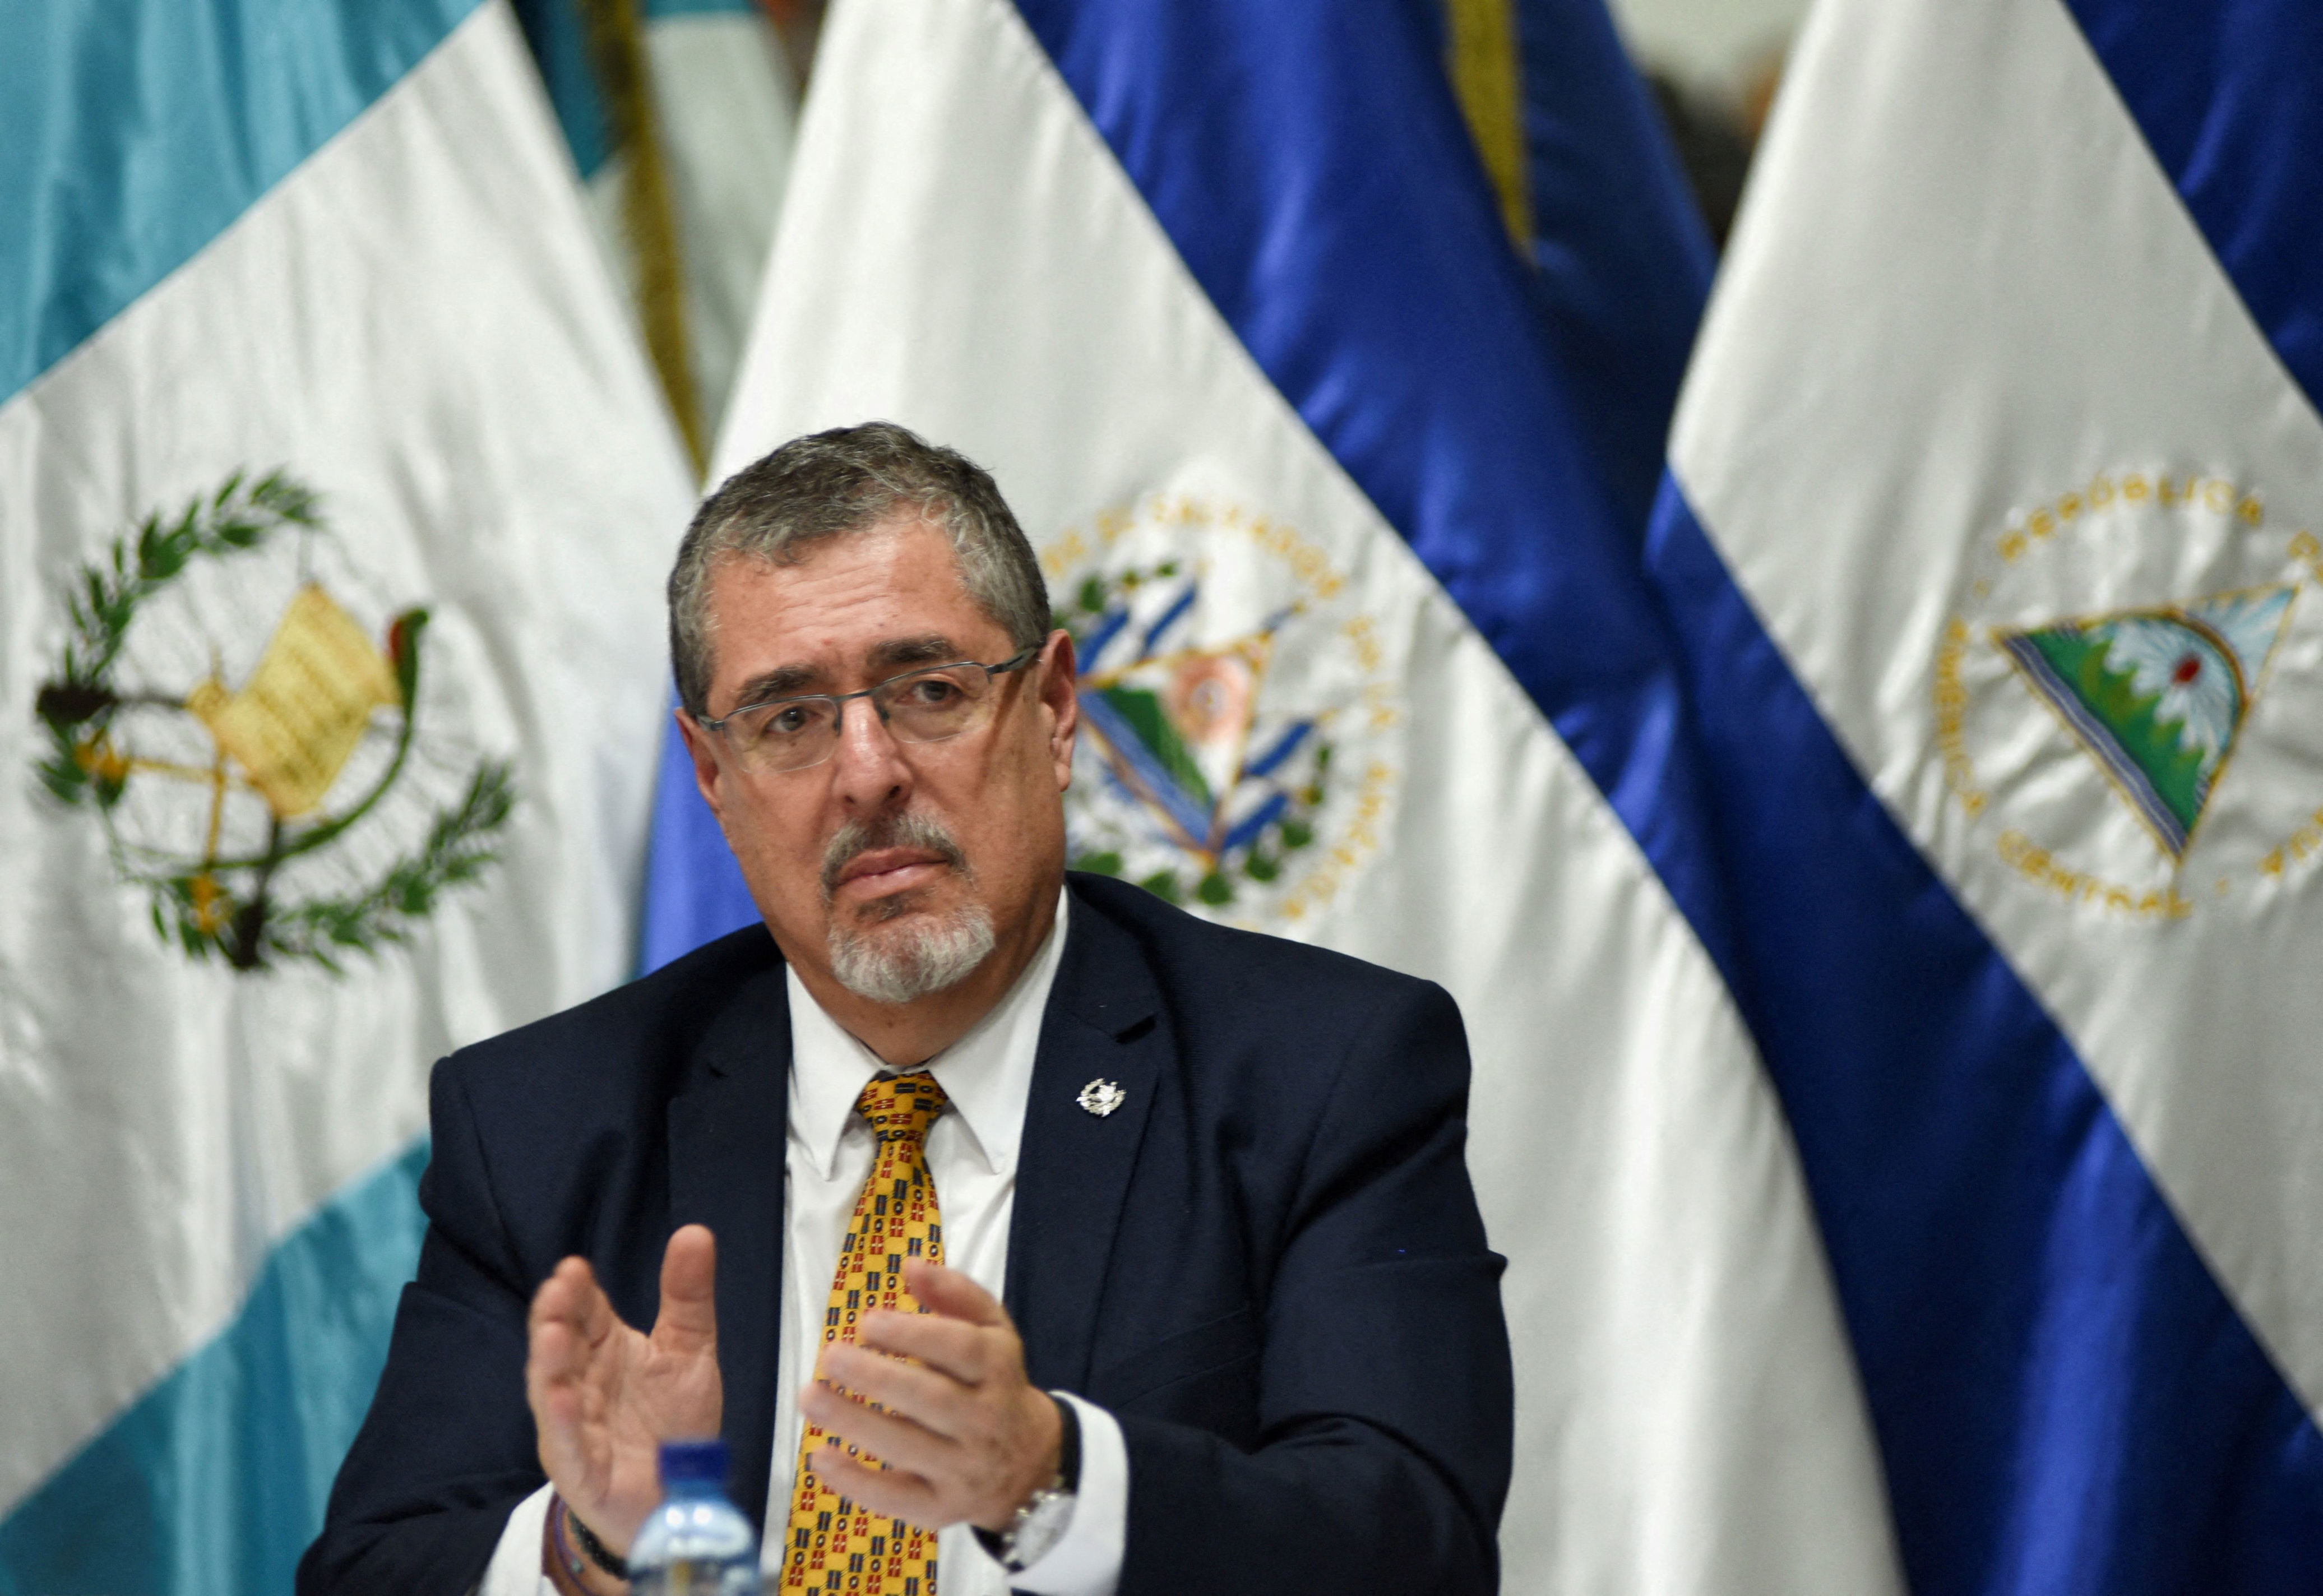 gobierno entrega apoyo al presidente electo de guatemala: “hacemos un llamado al congreso a cumplir con su mandato de entregar el poder”